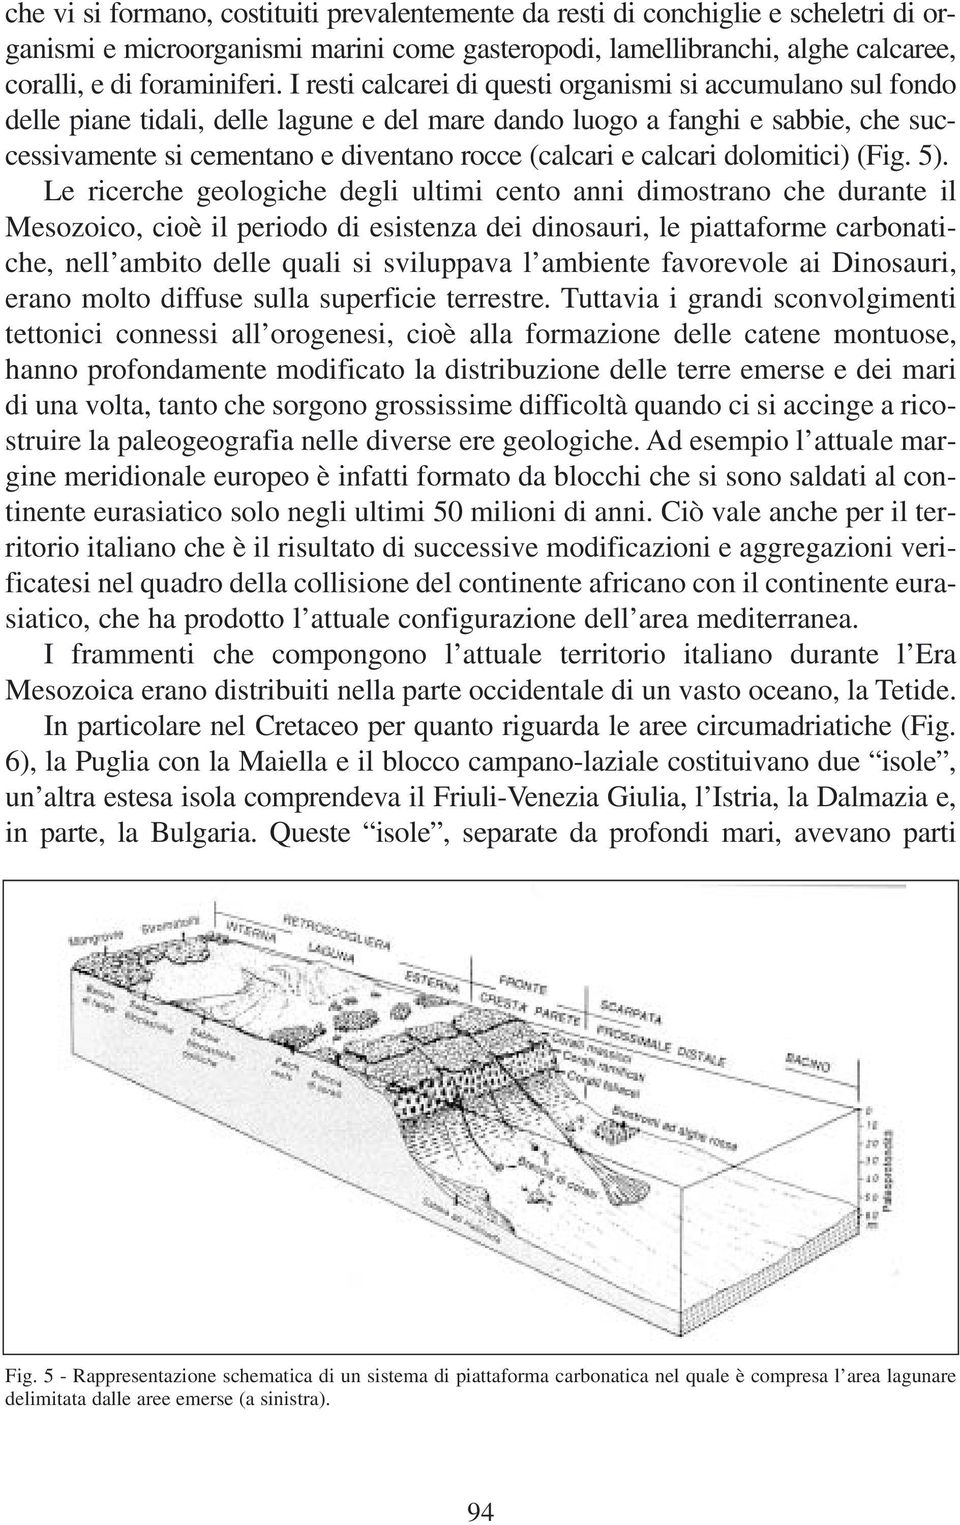 calcari dolomitici) (Fig. 5).